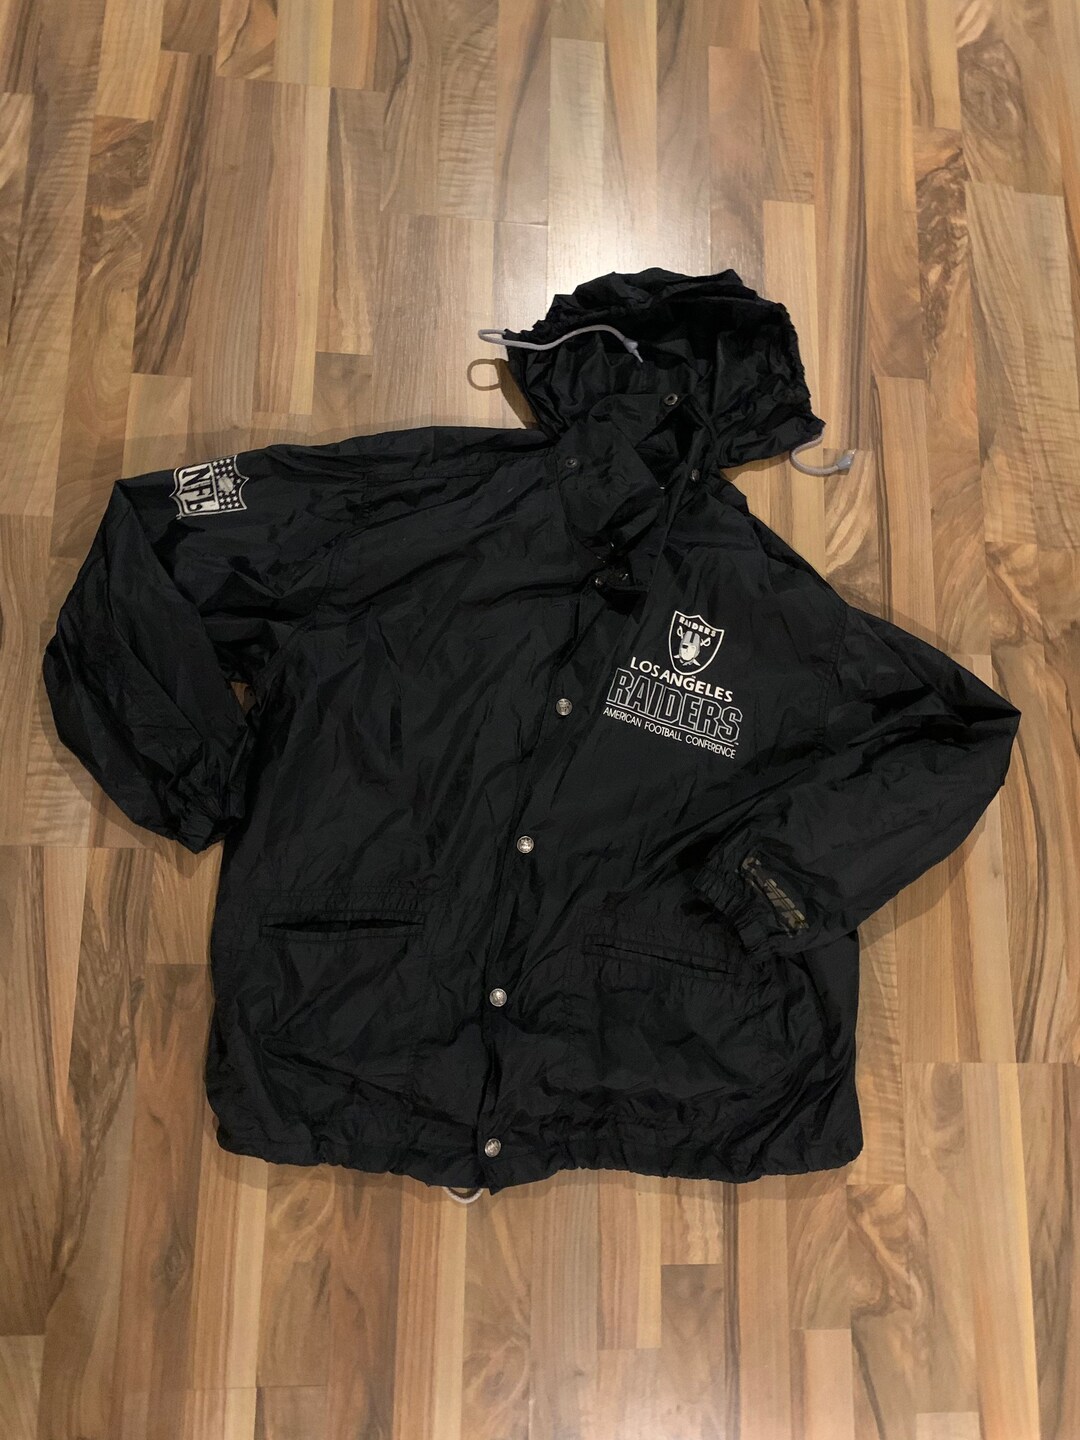 Campri Jacket Los Angeles Raiders Size XL Vintage JACKET - Etsy